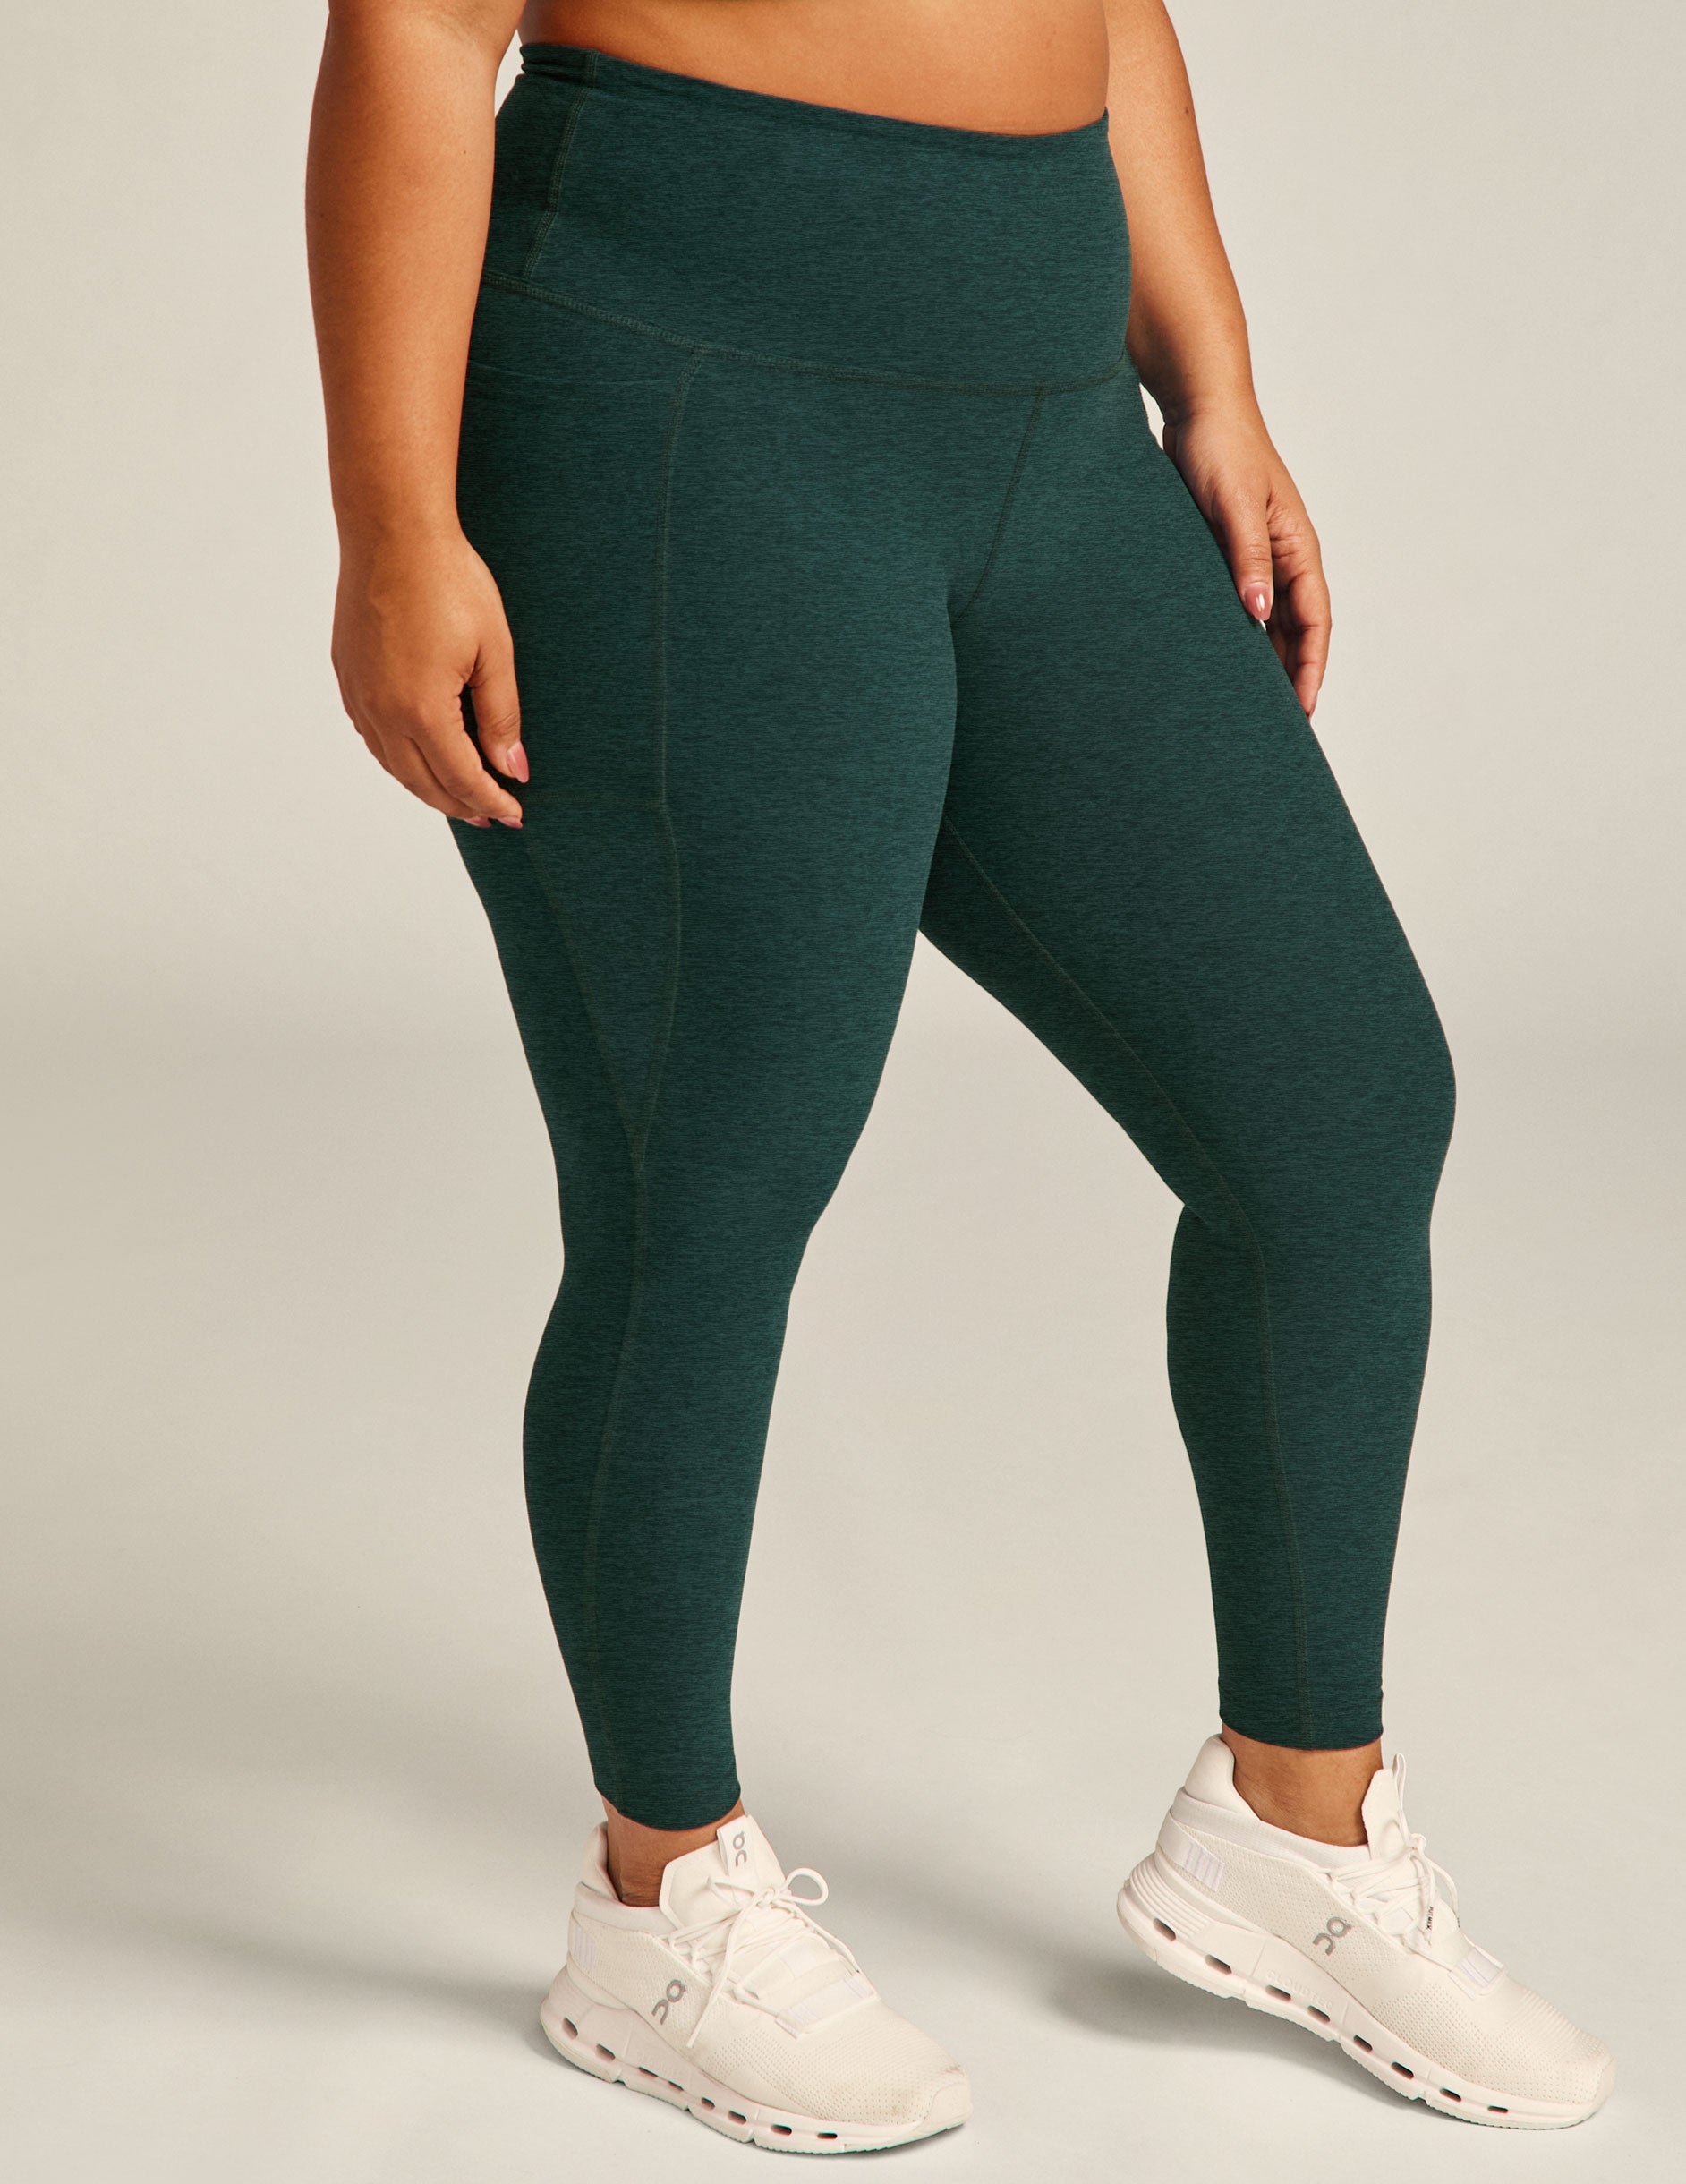 Beyond Yoga NWT size XL green leggings